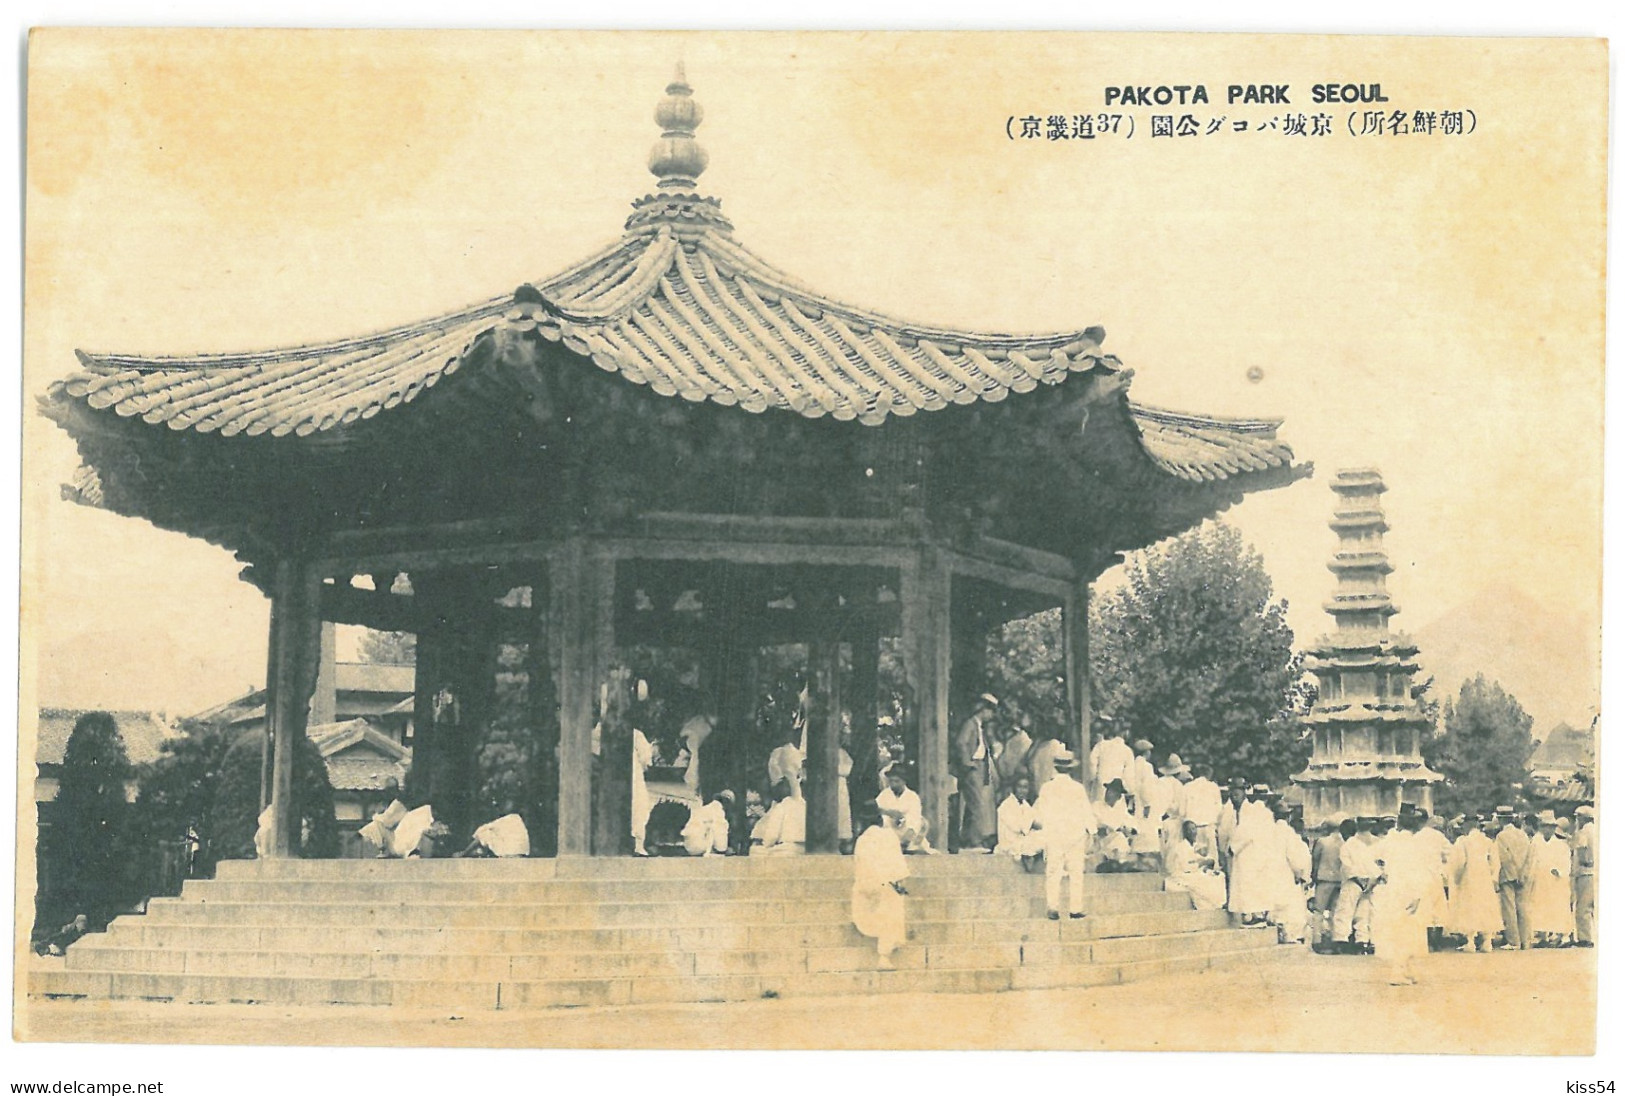 KOR 4 - 17816 SEOUL, Pakota Park, Korea - Old Postcard - Unused - Korea (Süd)